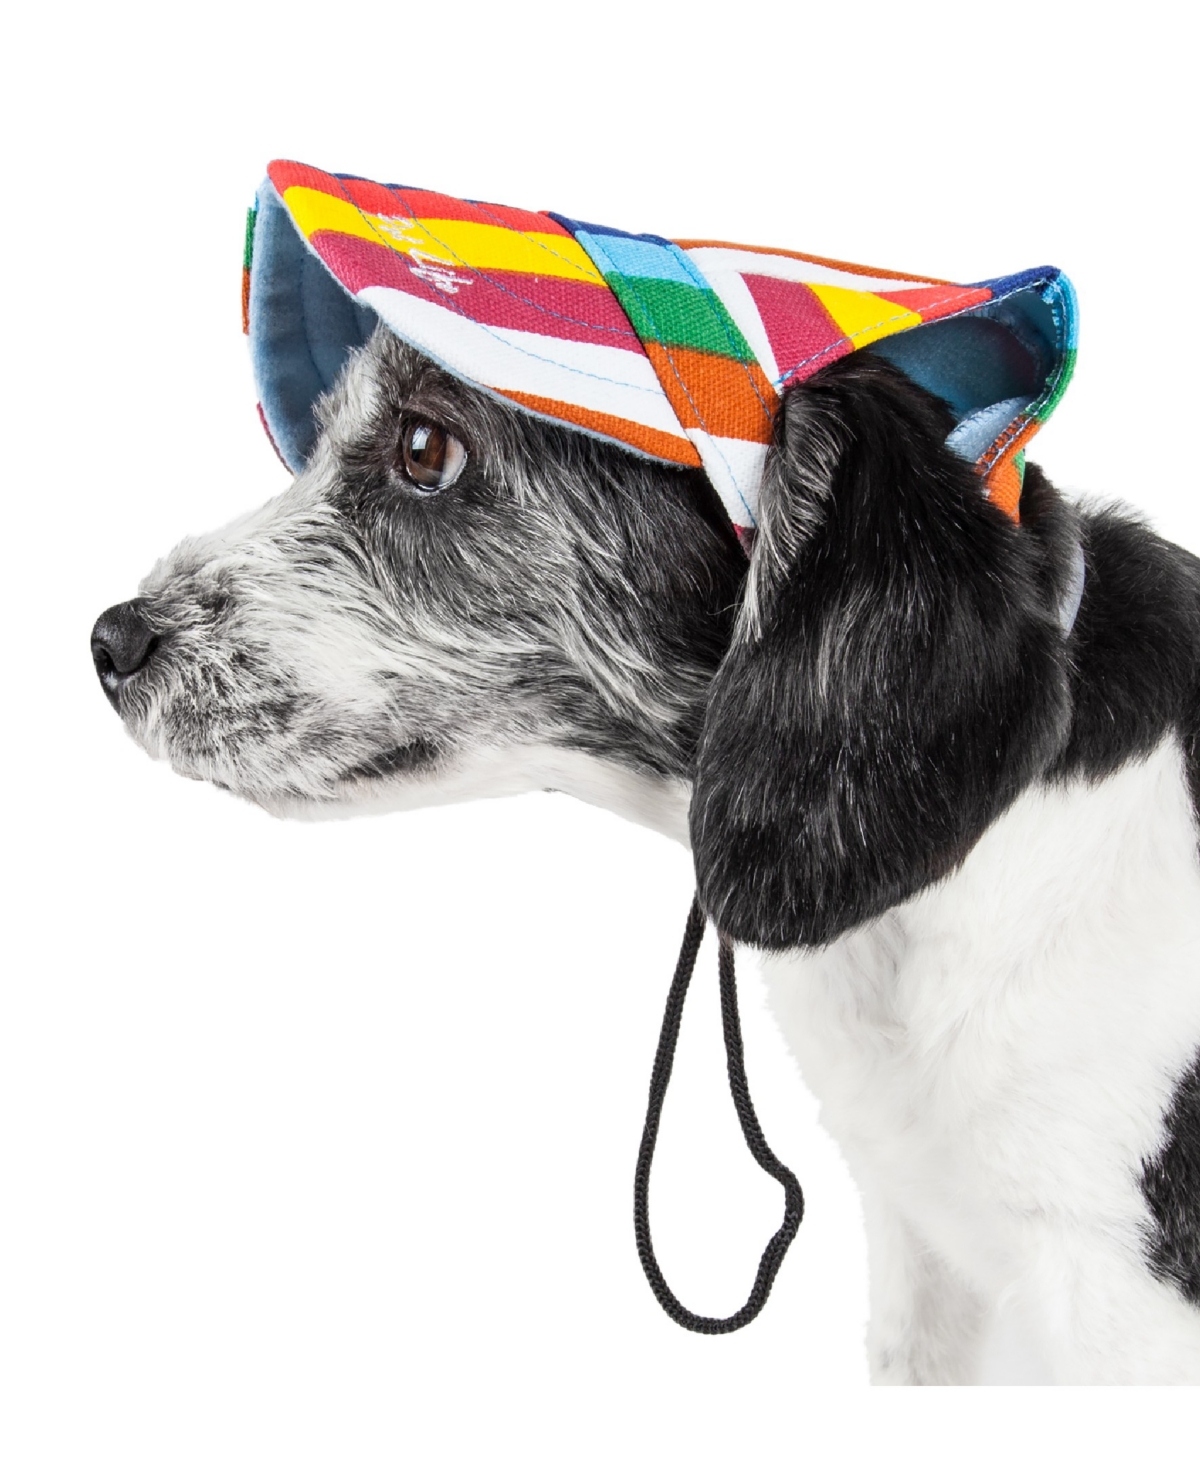 'Colorfur' Floral Uv Protectant Adjustable Fashion Dog Hat Cap - Multi